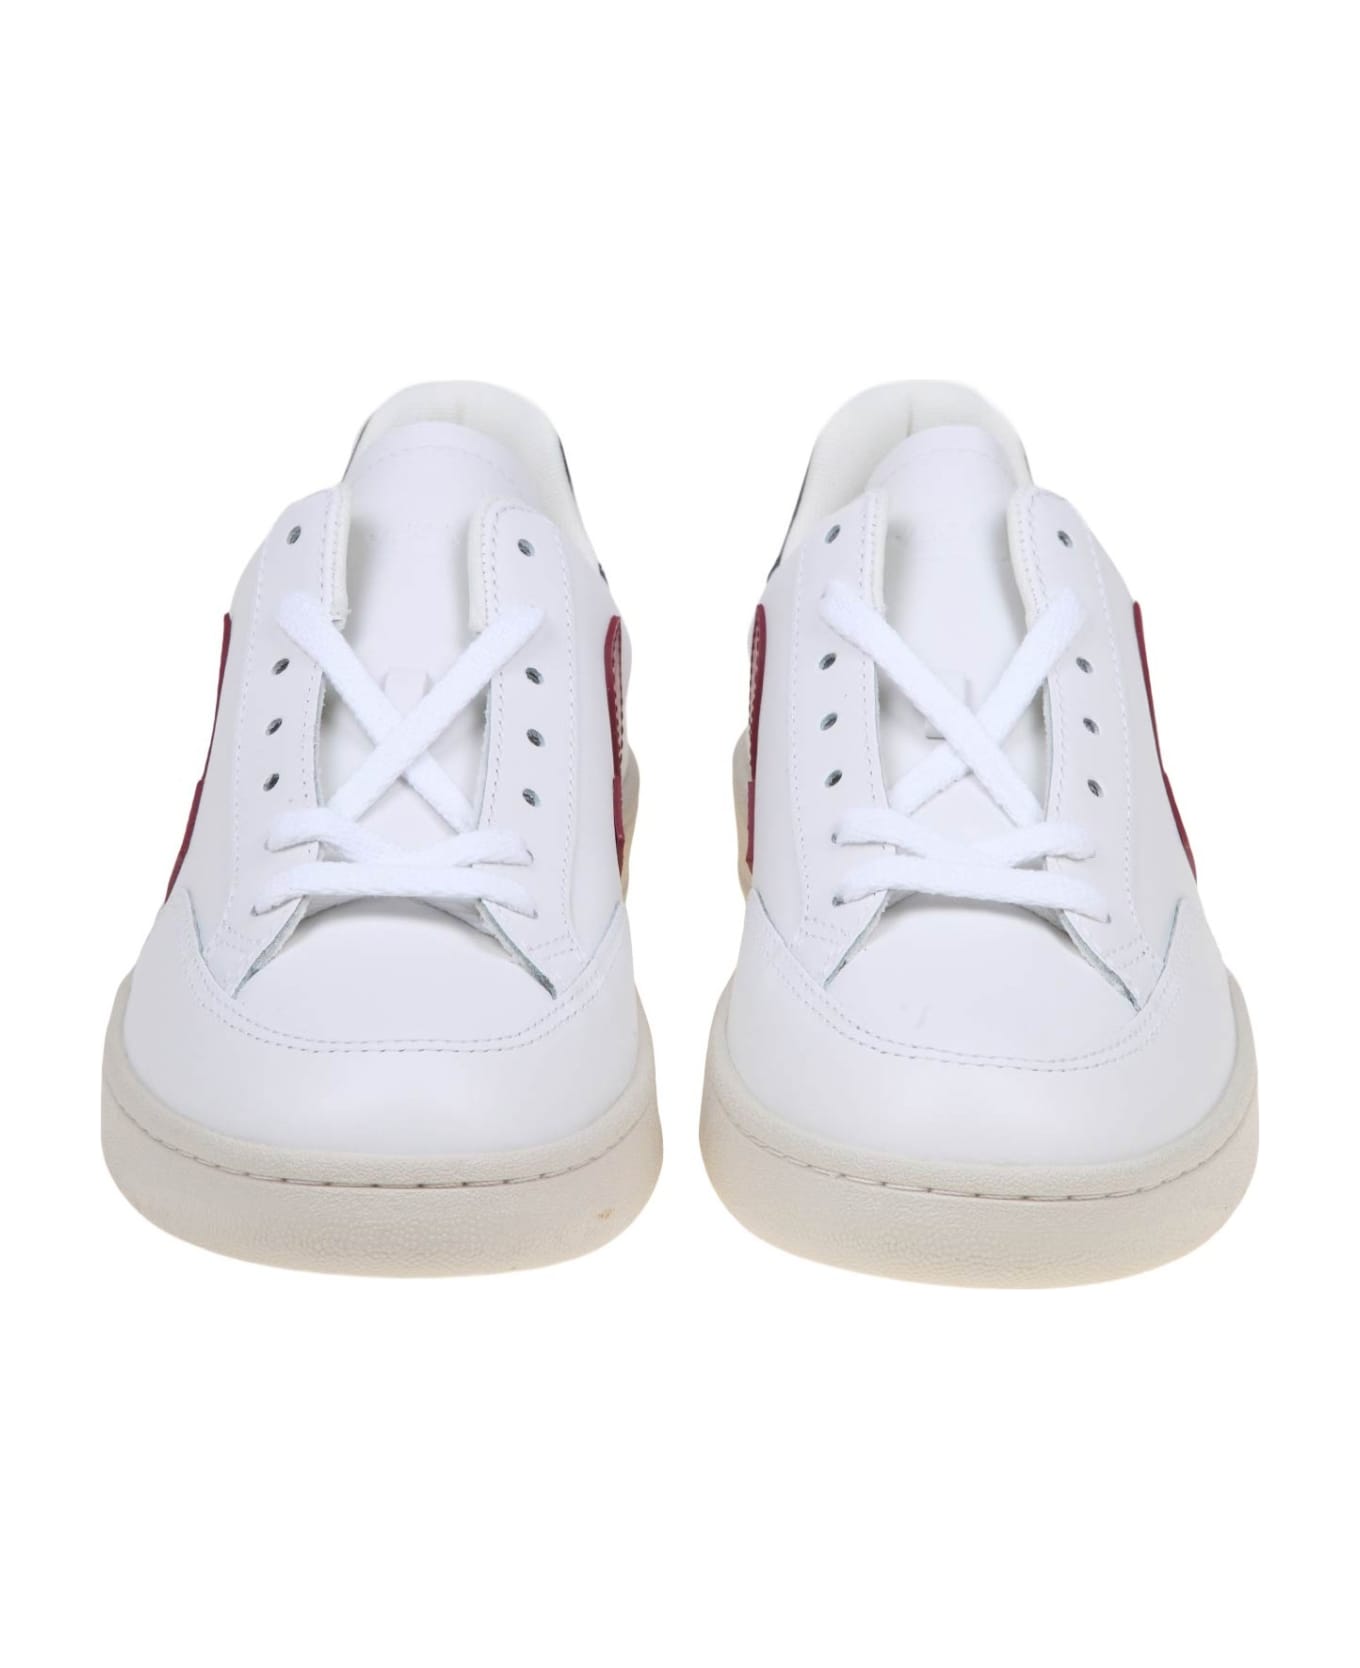 Veja V 12 Sneakers In White/marsala Leather スニーカー